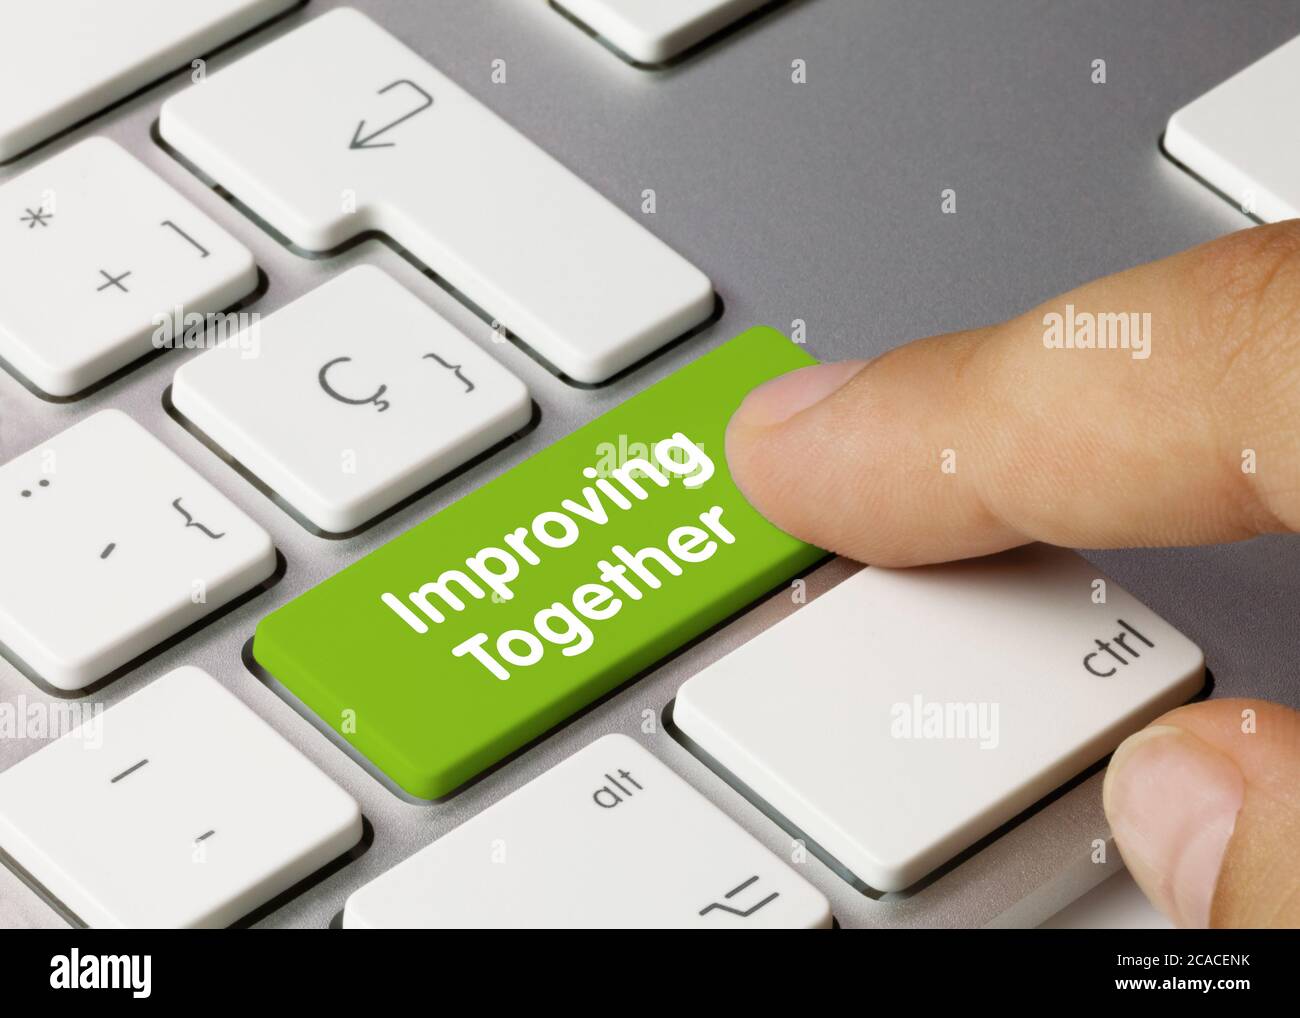 Migliorare insieme scritto su Green Key della tastiera metallica. Premere il tasto con il dito. Foto Stock